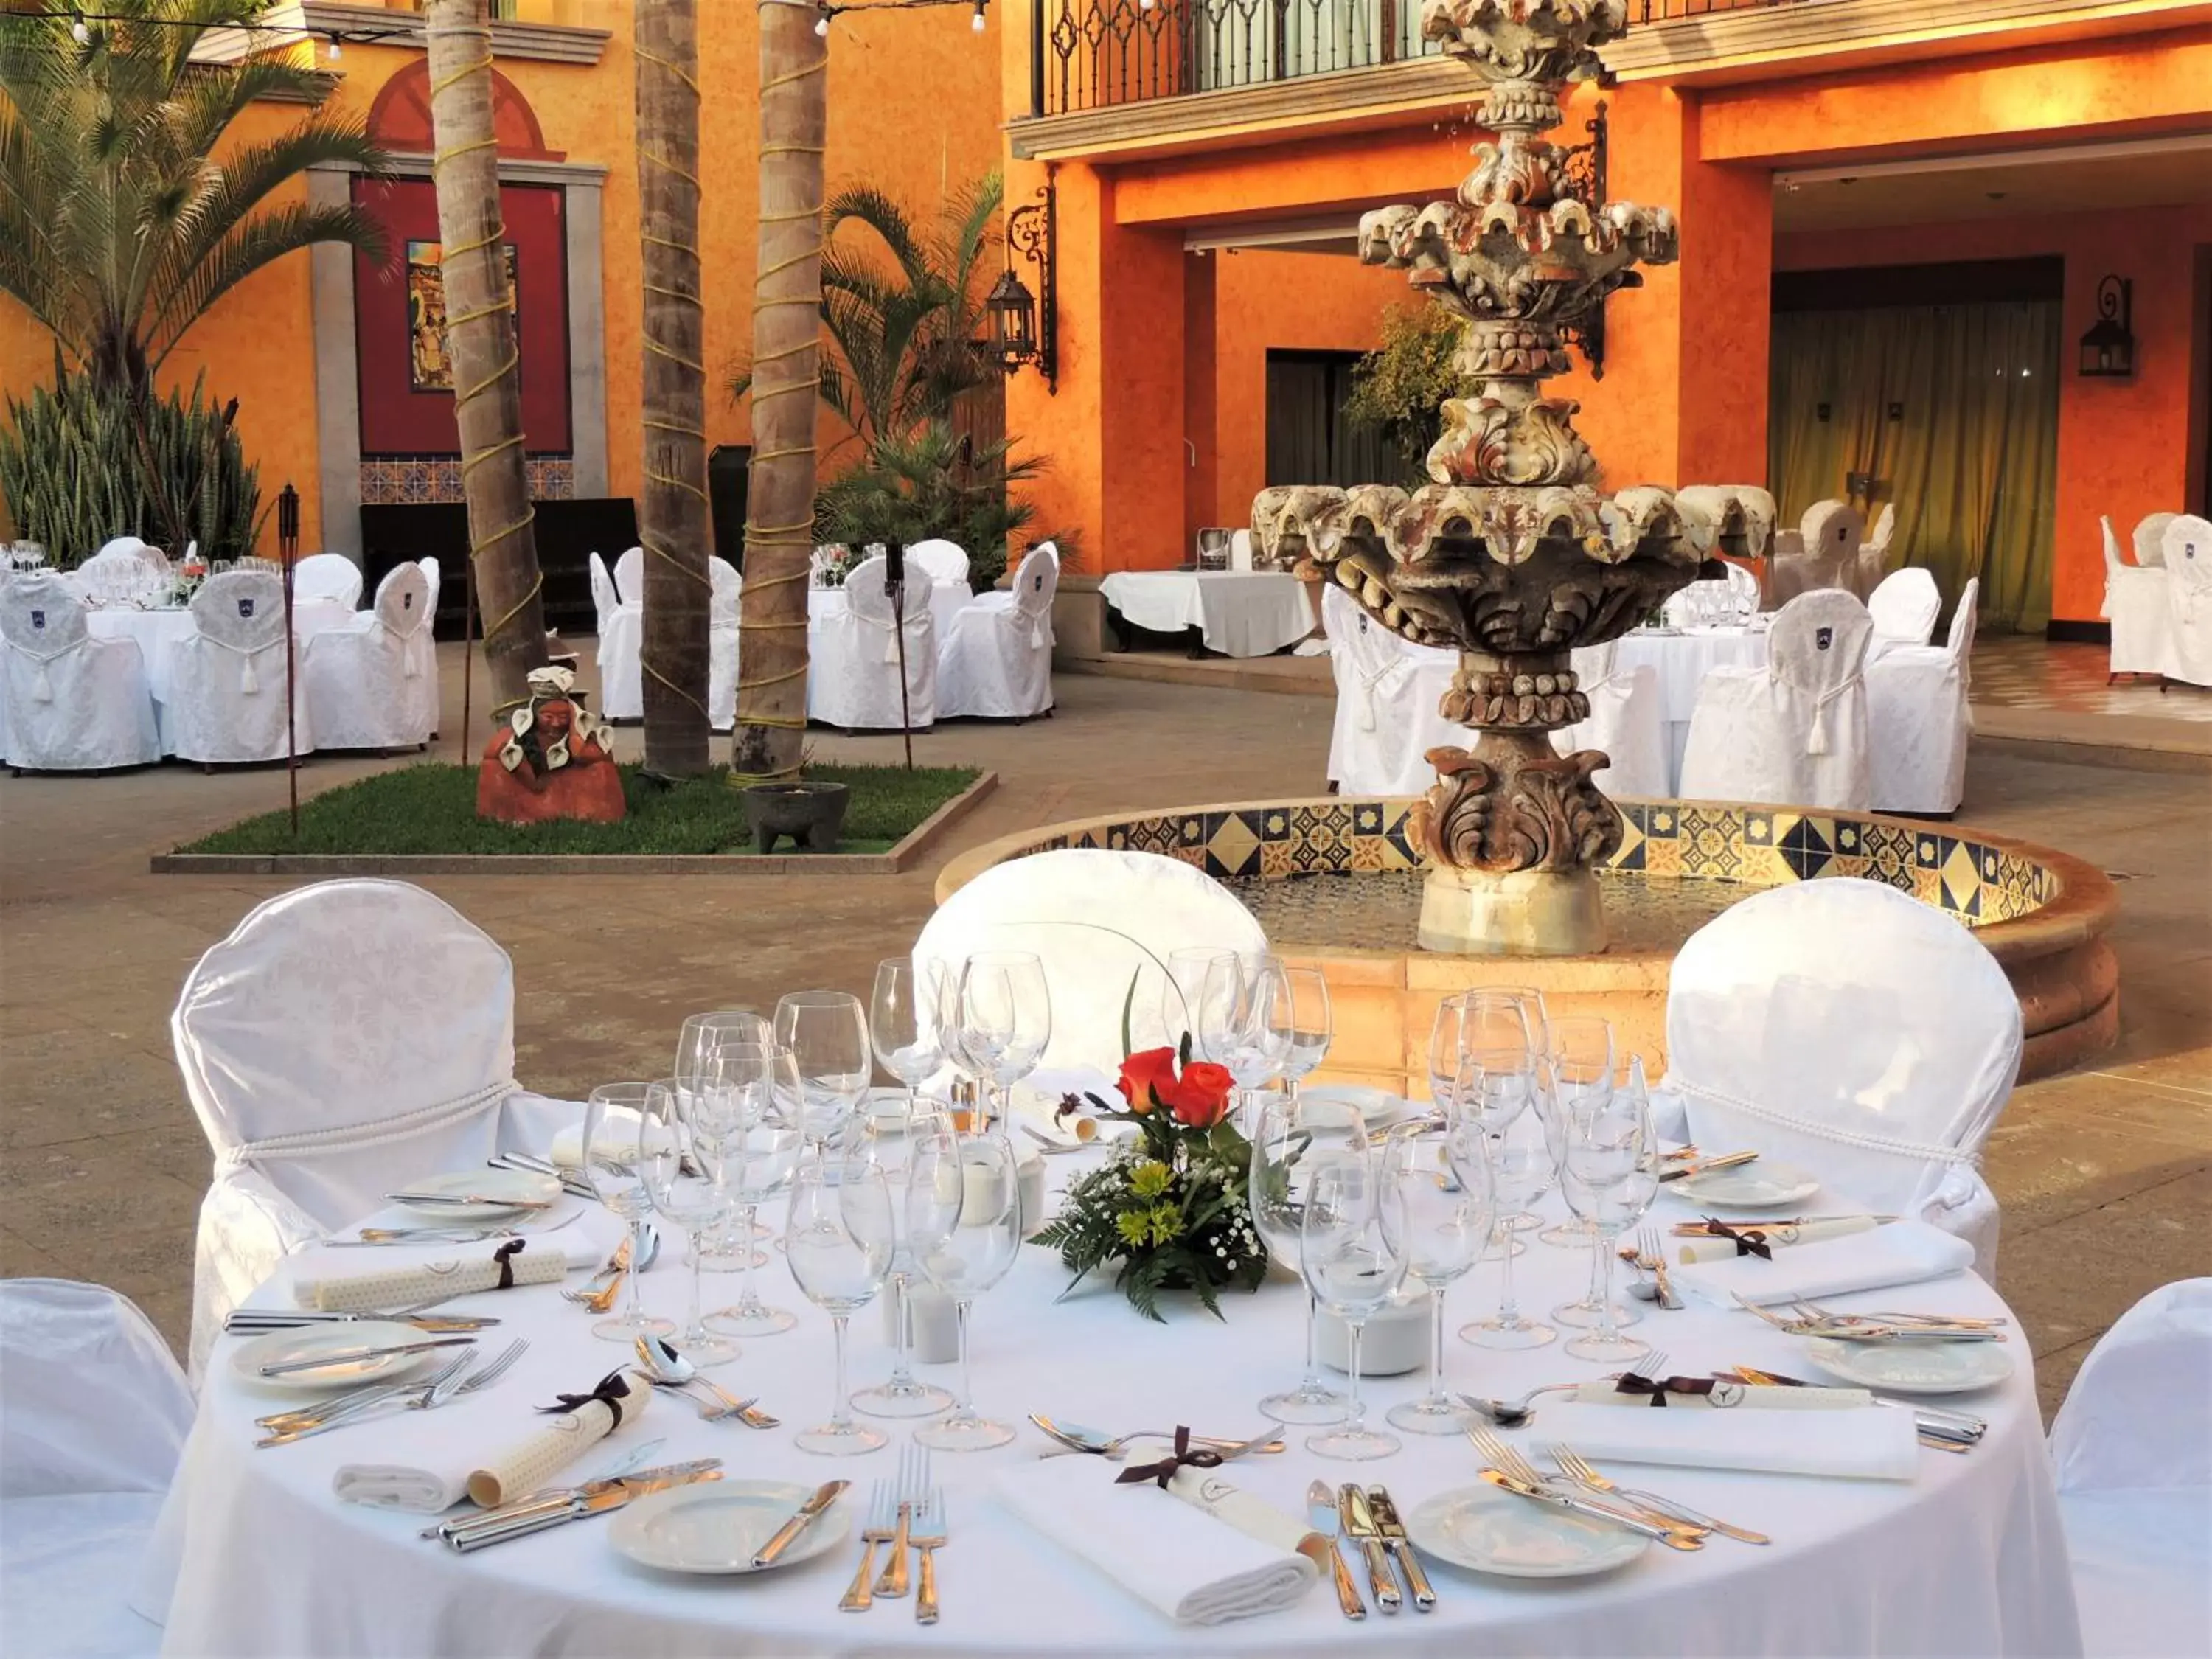 Banquet/Function facilities, Banquet Facilities in Europe Villa Cortes GL